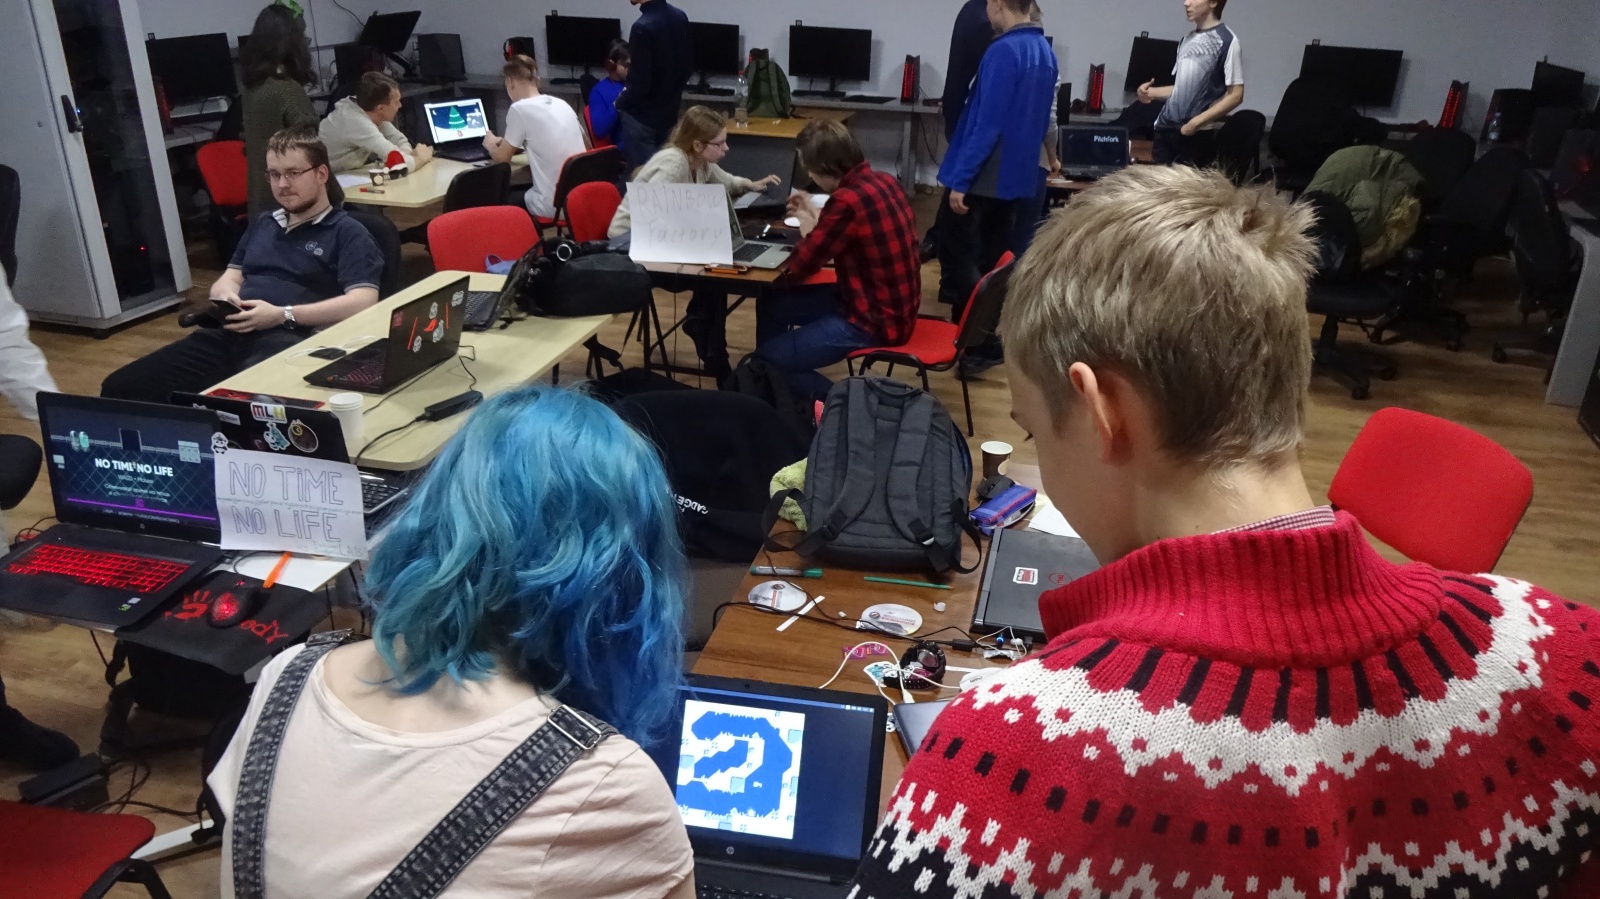 Участники облепили ноутбук с запущенной игрой Jlim - игрой, запускаемой на той самой PICO-8